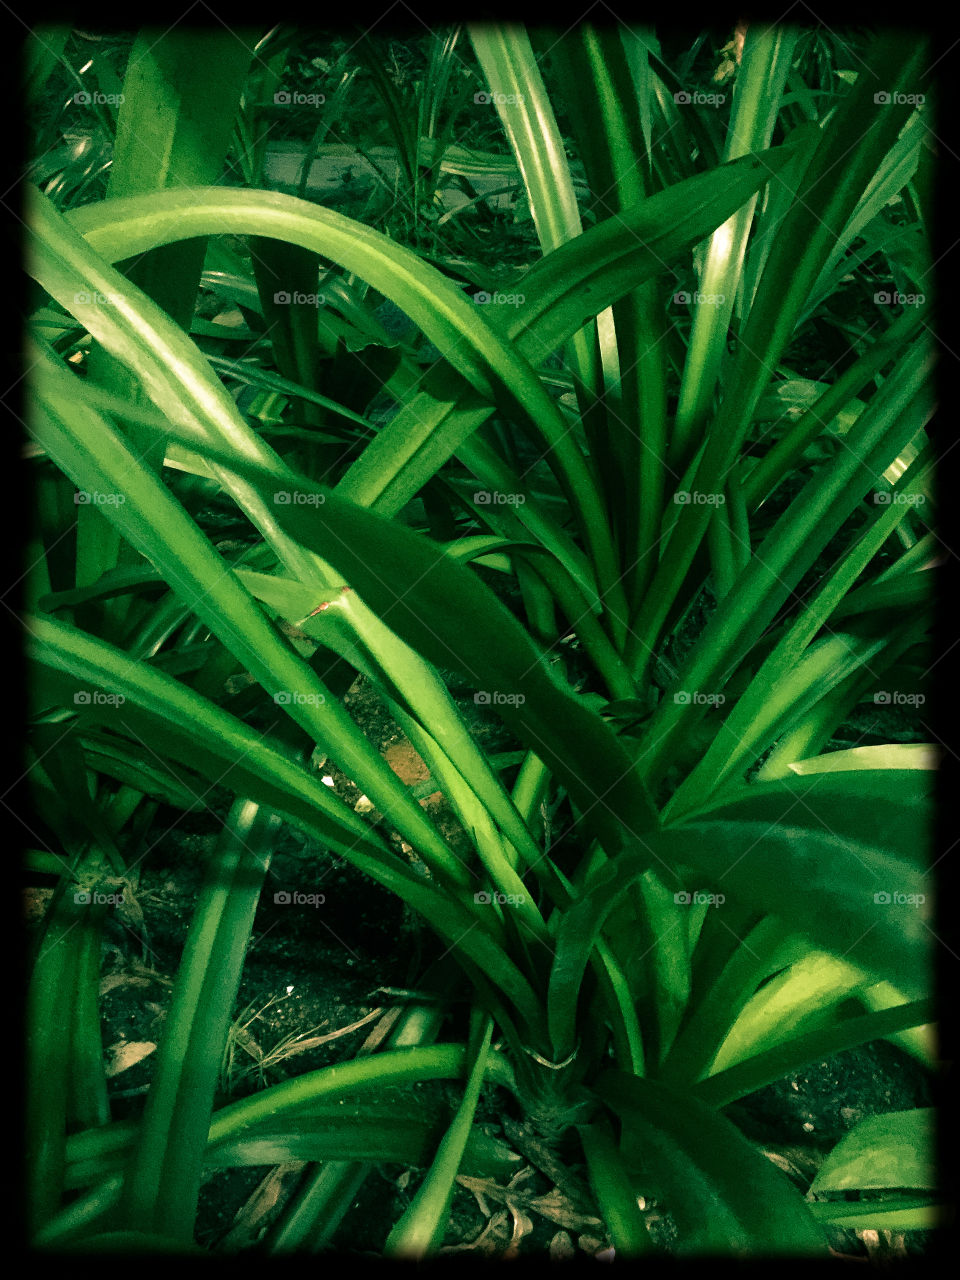 Green green grass...